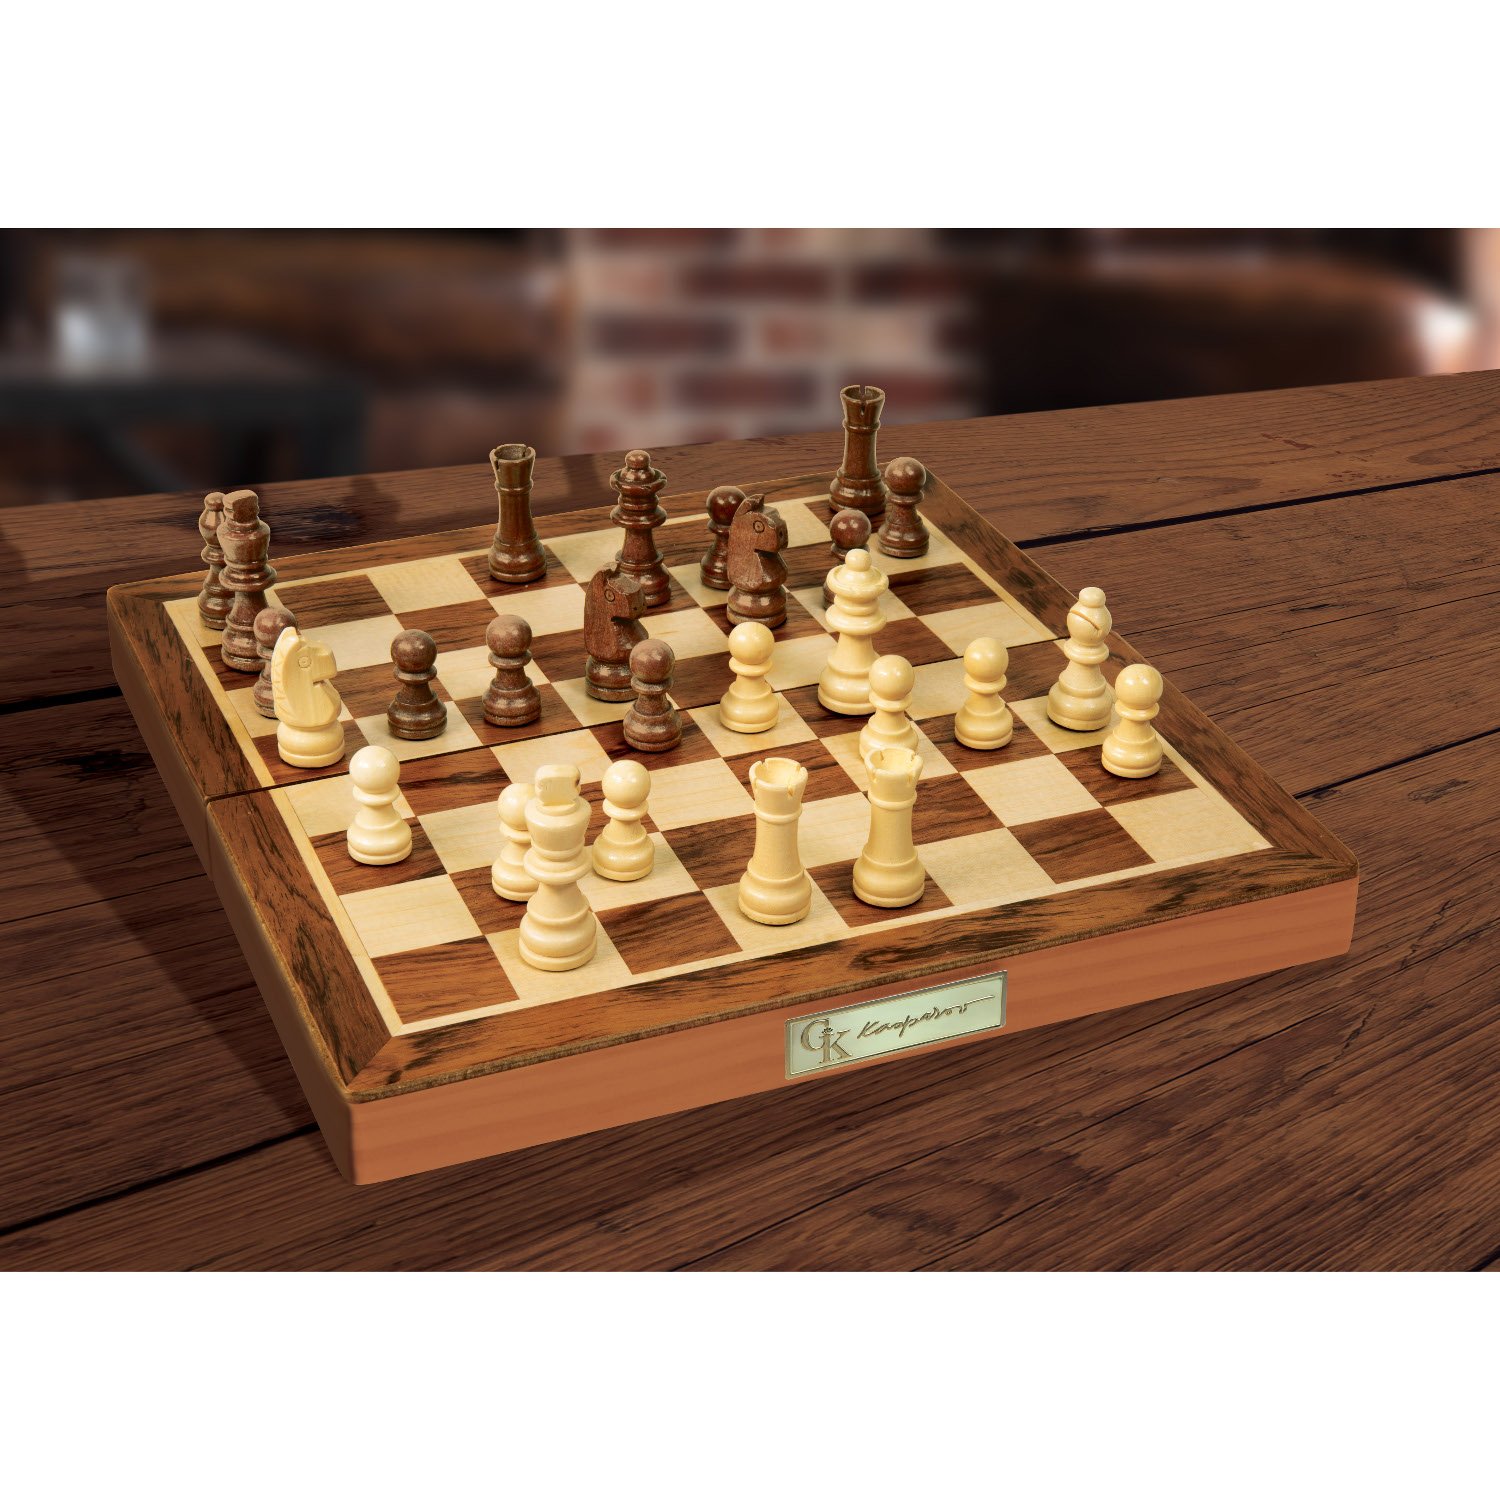 kasparov chess set review